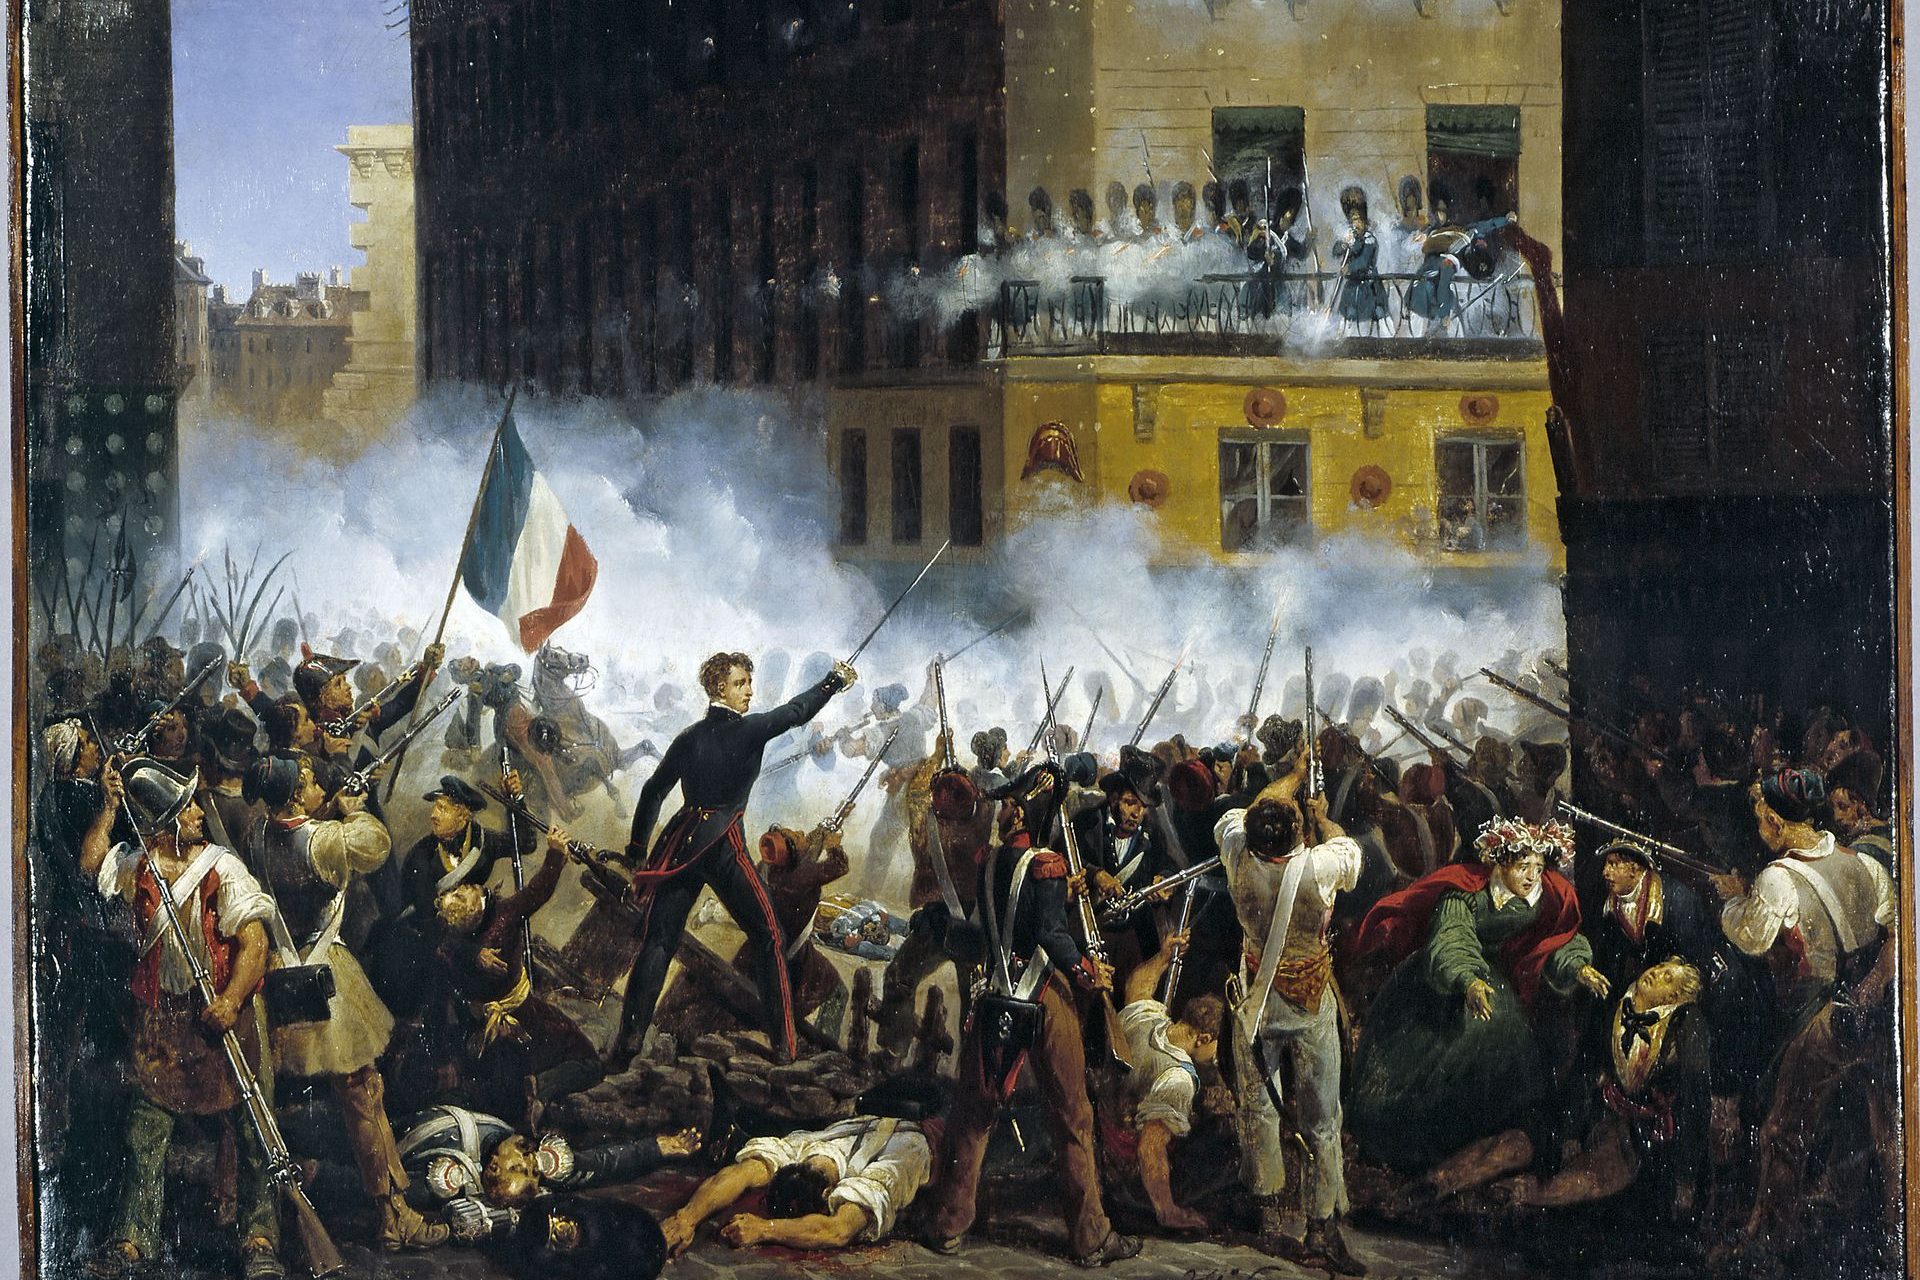 Кризис 18 века. Революция 1830 г во Франции. Великая французская революция 1789. Июльская революция 1830 года во Франции. Революция во Франции 1789.